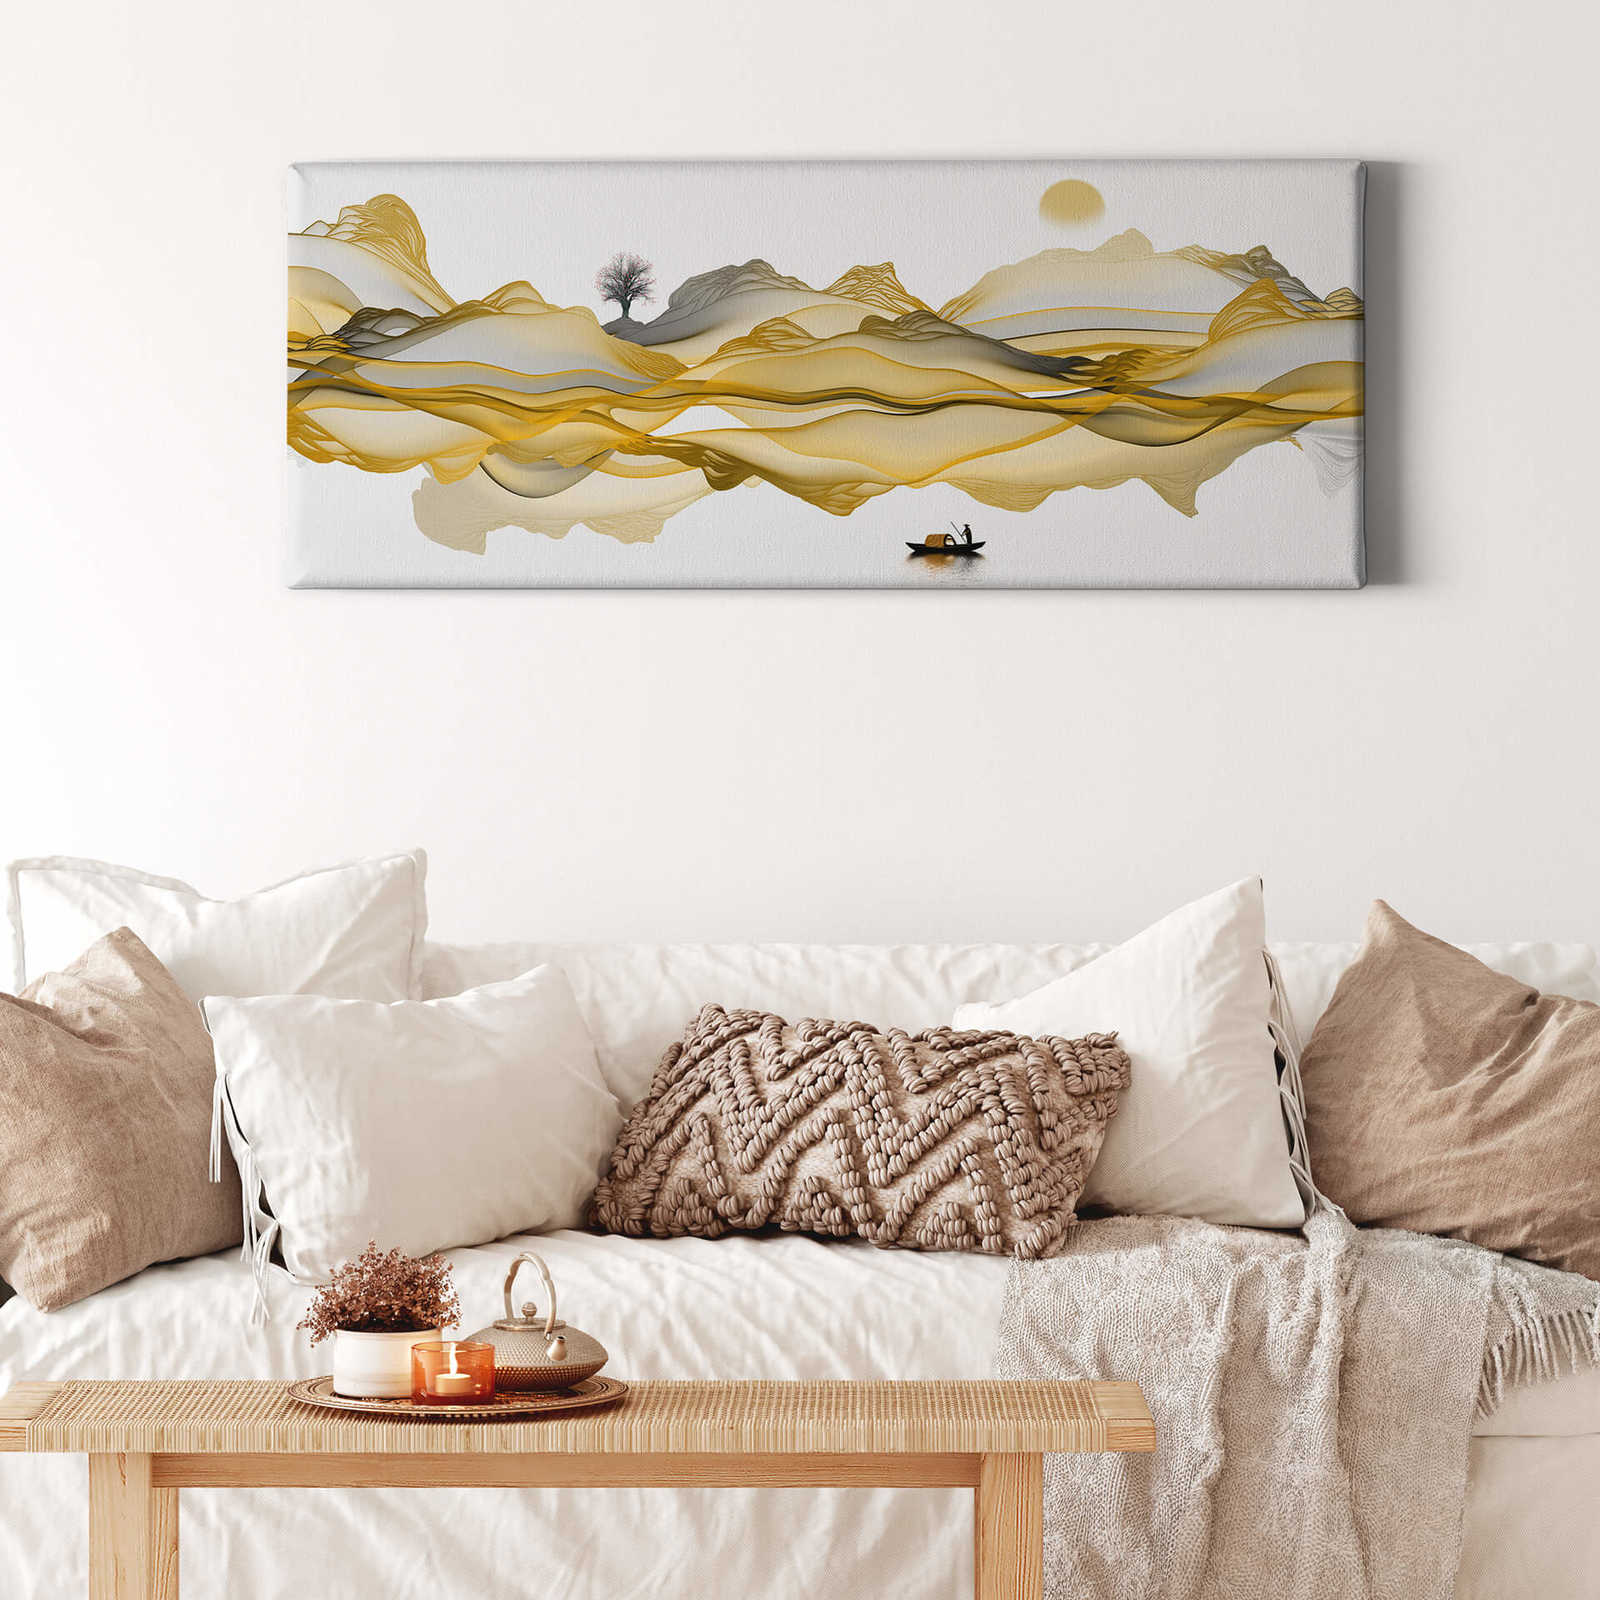             Panorama Canvas schilderij abstract landschap in goud, grijs - 1,00 m x 0,40 m
        